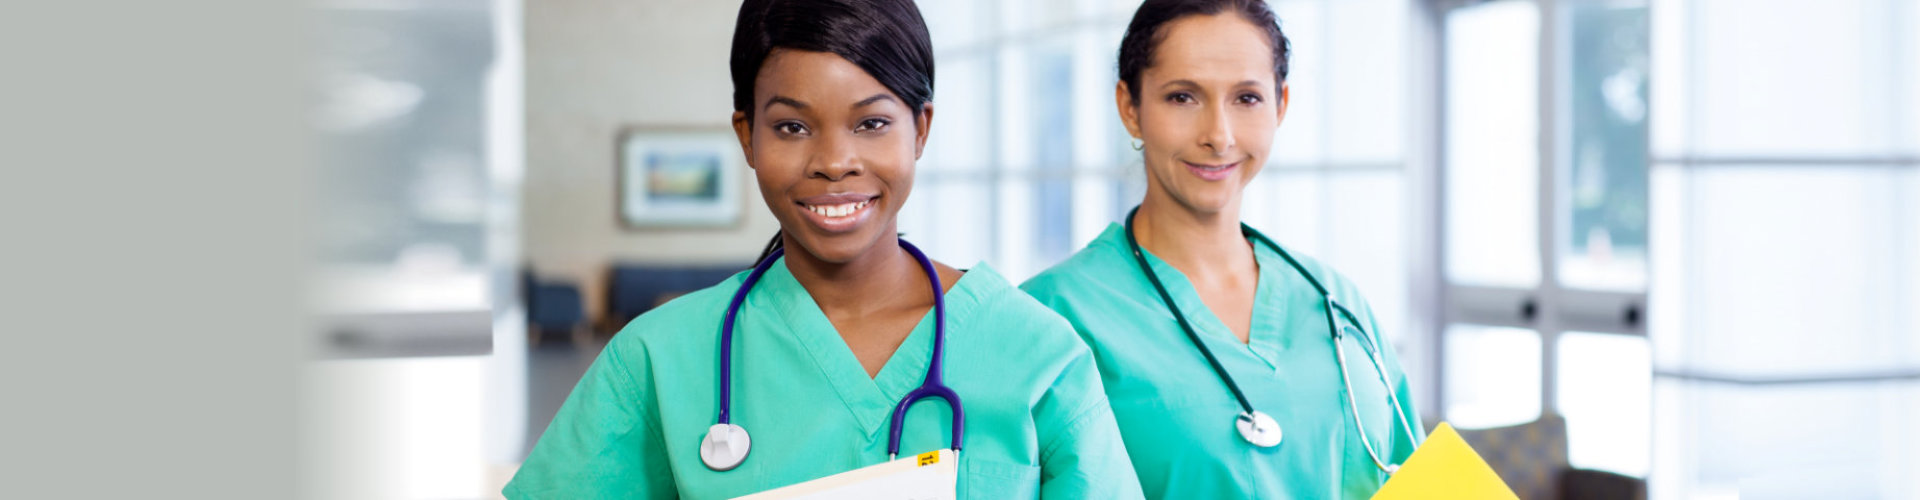 two female nurse wearing stethoscopes smiling